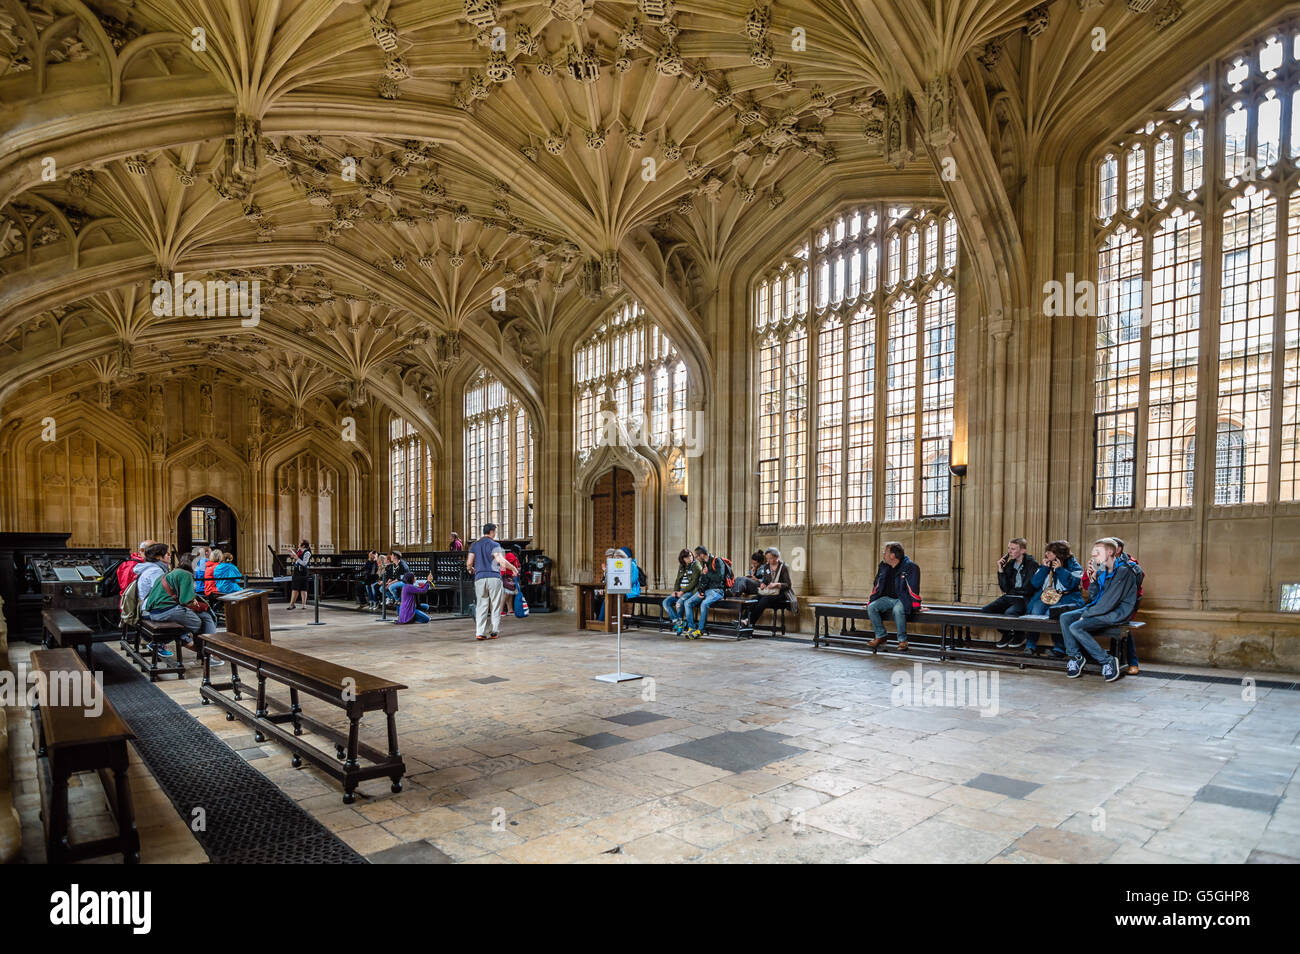 Oxford, Regno Unito - 12 agosto 2015: interno della biblioteca Bodleian Library con i turisti. Il fie architettura della biblioteca ha reso un favo Foto Stock